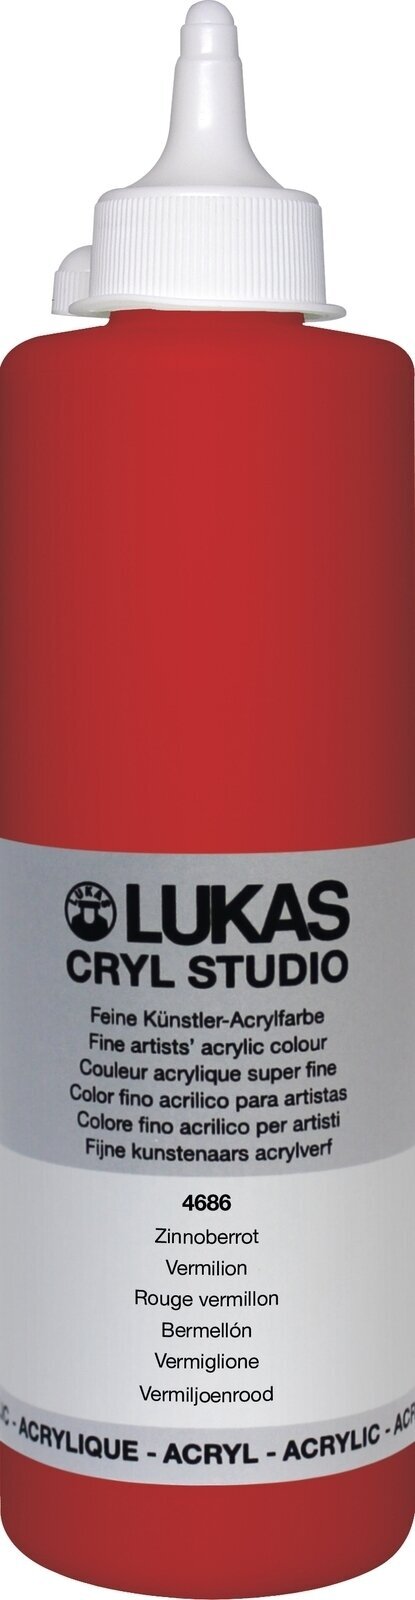 Akrilna barva Lukas Cryl Studio Akrilna barva 500 ml Vermilion